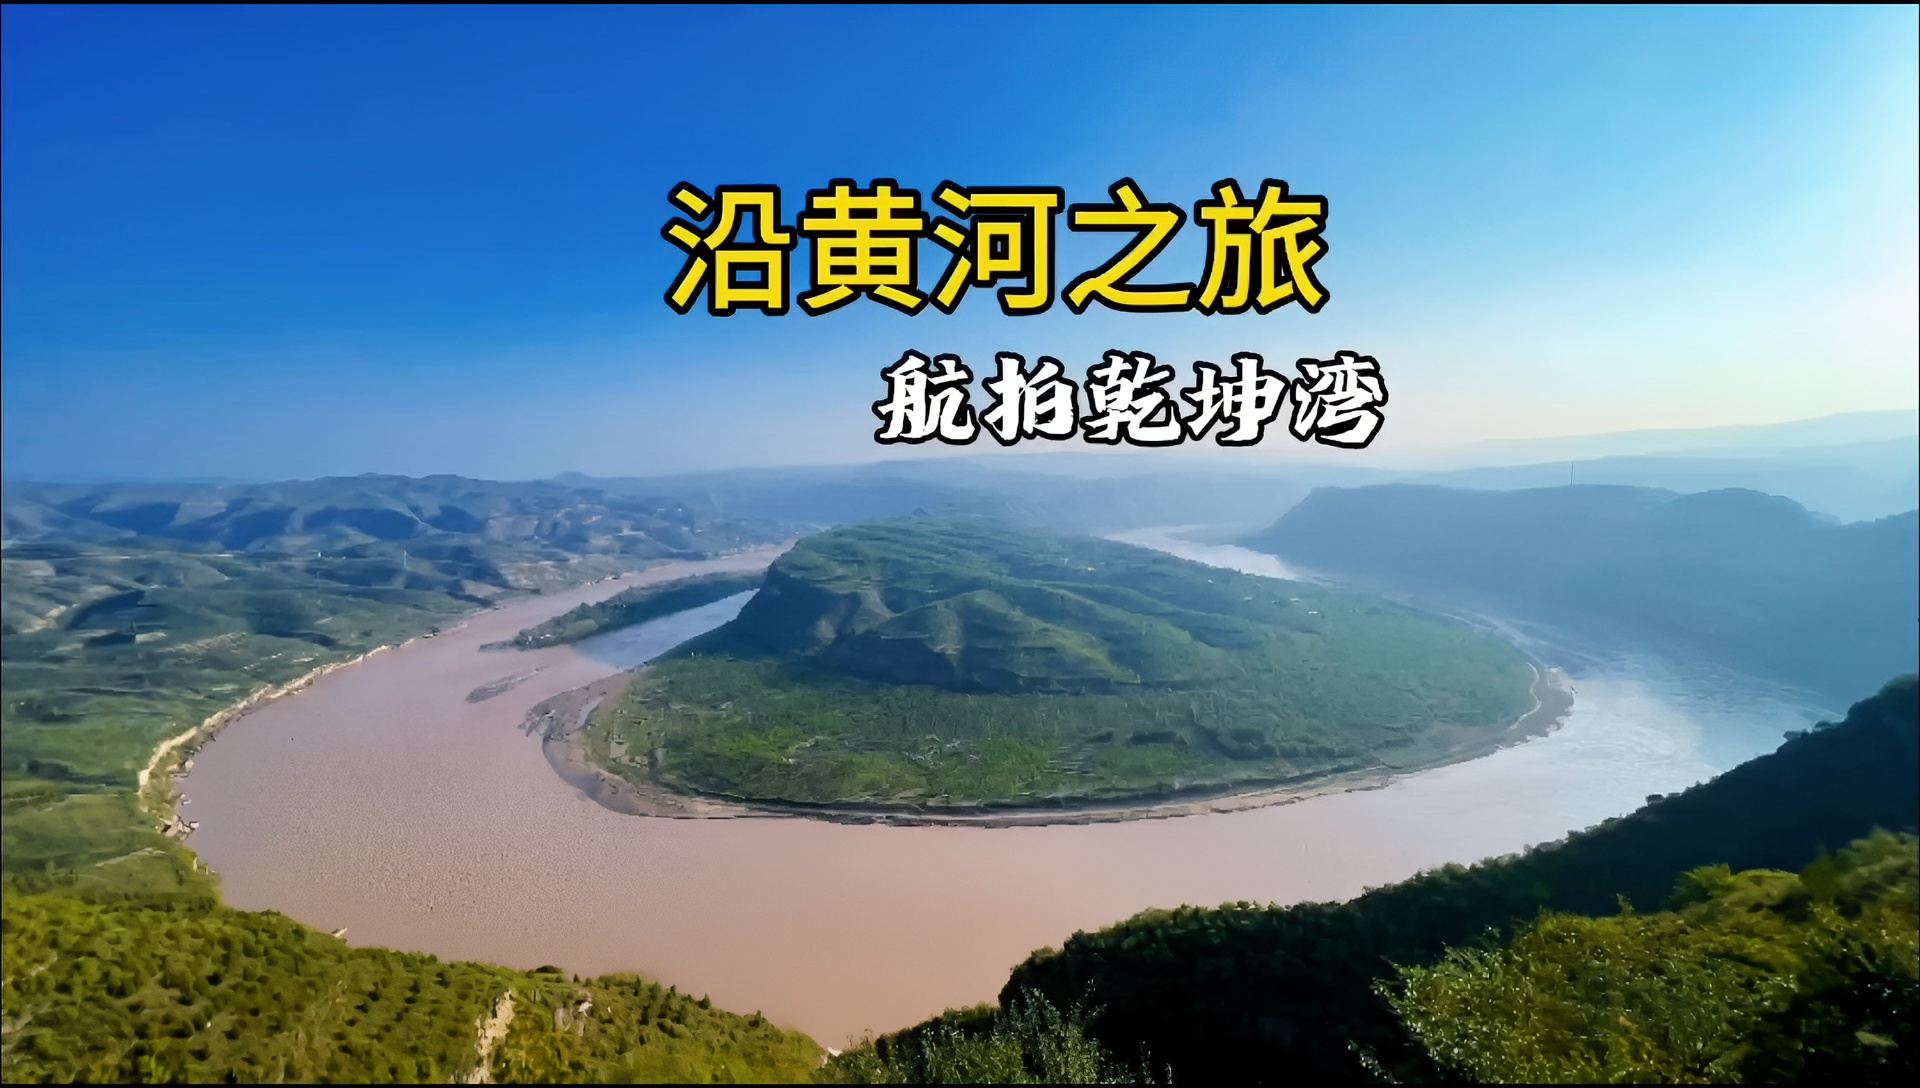 黄河九曲，曲曲都是天地奇观。 延川境内的黄河晋陕大峡谷位于乾坤湾镇的黄河西岸，是黄河全程中最有气势的